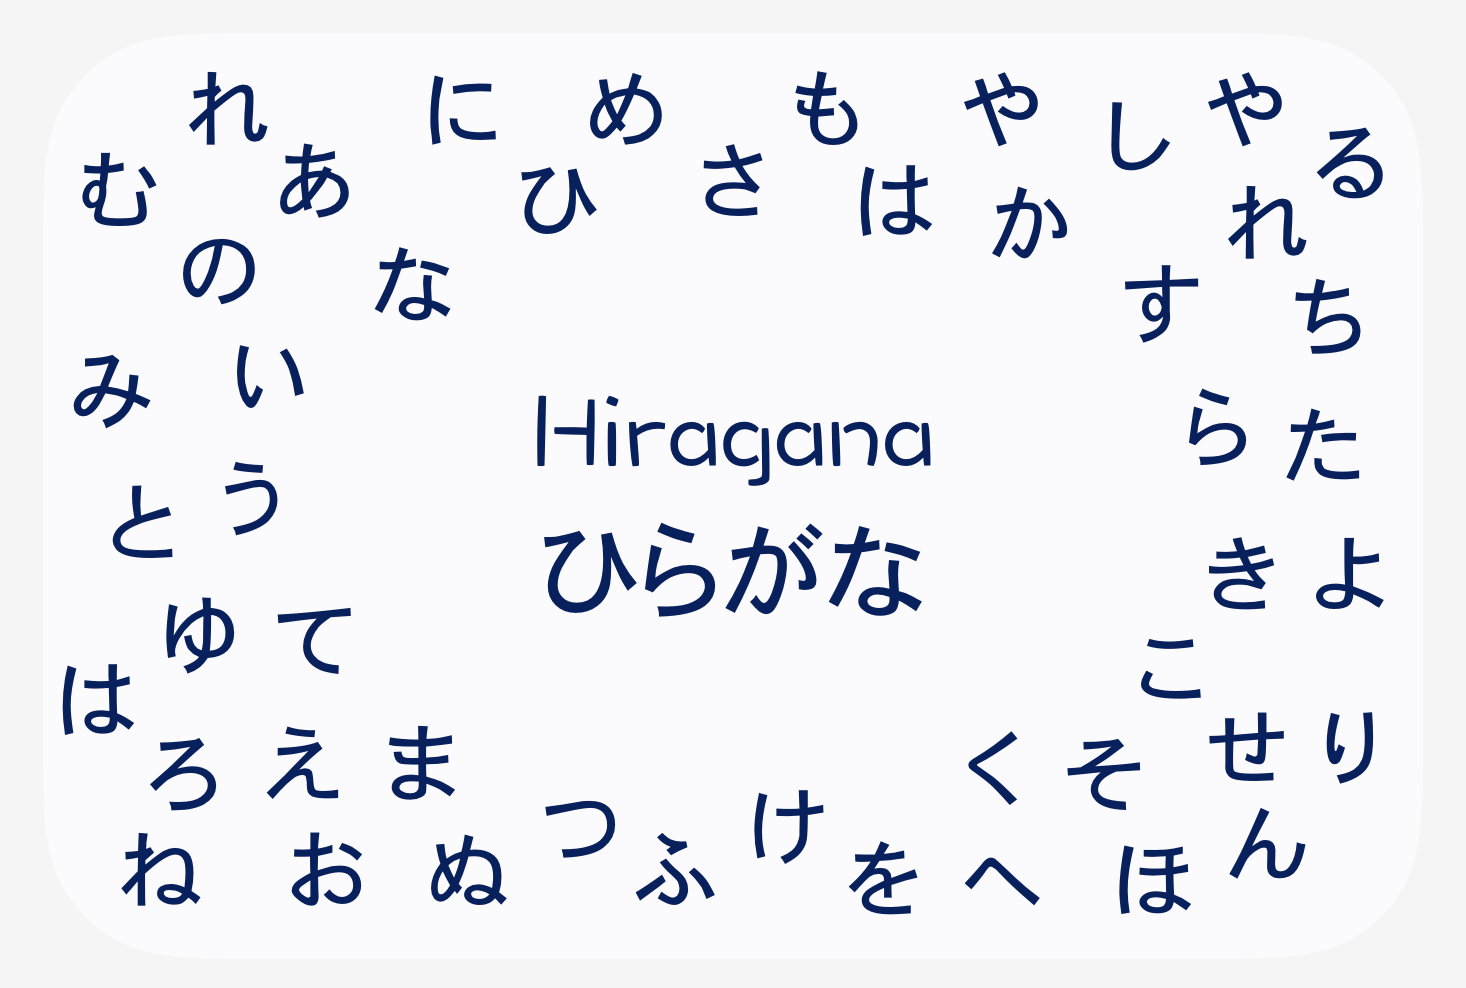 Hiragana Characters. せ. す. し. さ. こ. け. く. き. か. お. え. う. い. あ. u. o. i. a. ...